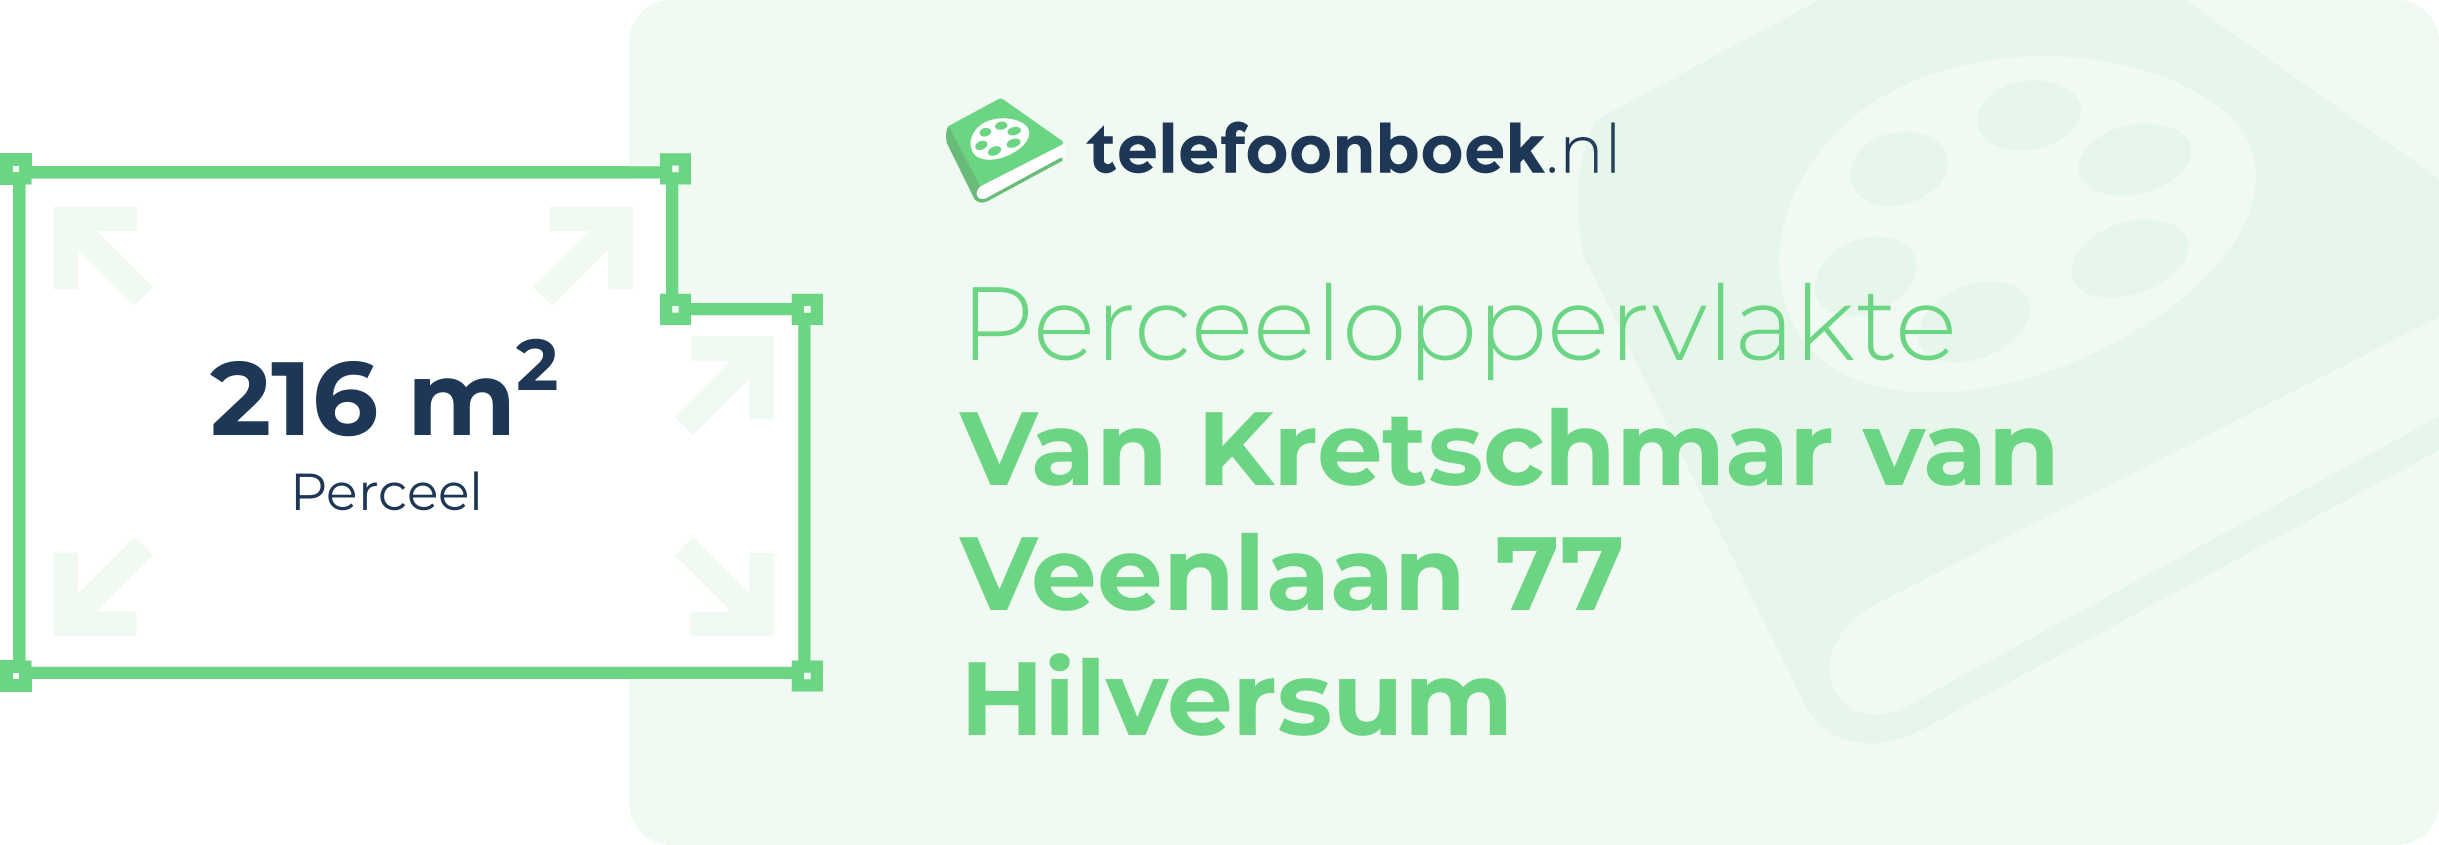 Perceeloppervlakte Van Kretschmar Van Veenlaan 77 Hilversum